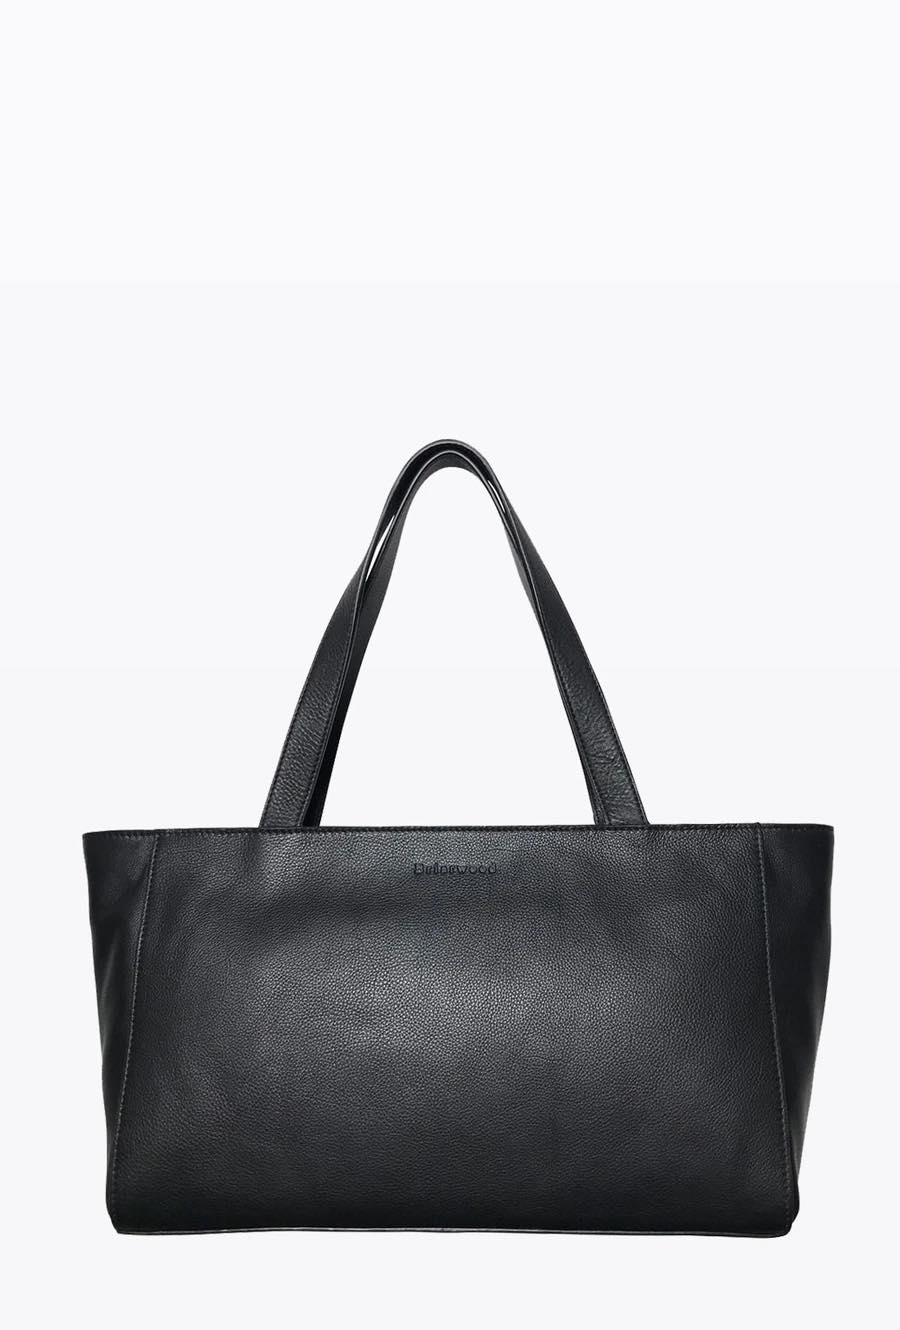 Cale Handbag - Briarwood - Intec Interiors Online Gift Shop